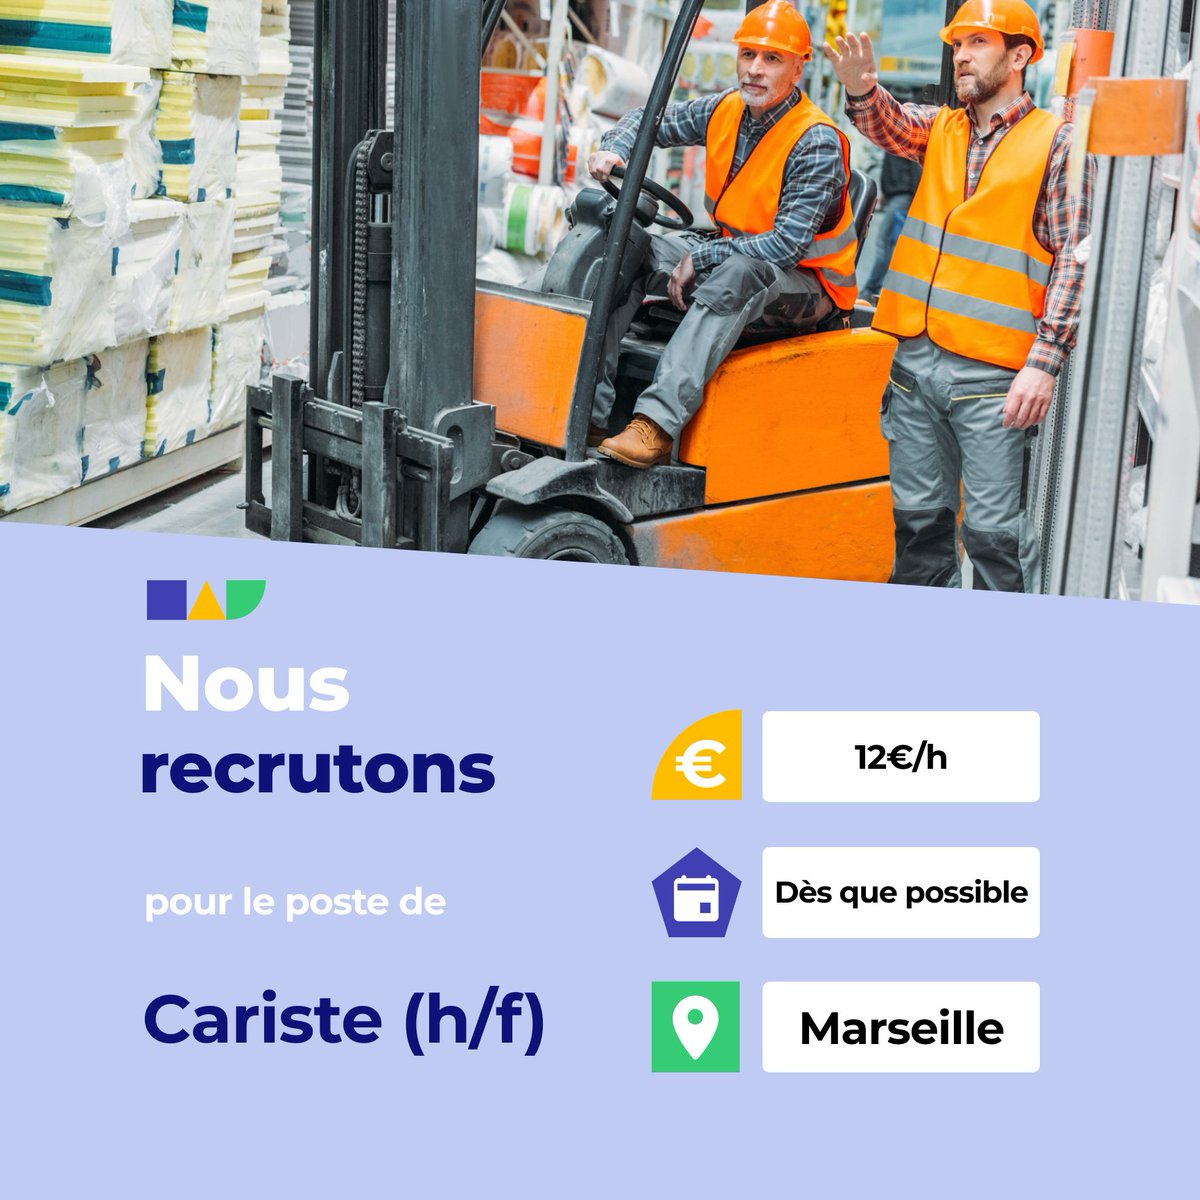 🛎️ Nouvelle offre d'emploi : Cariste (h/f) 🌎 Marseille (13016) 📅 Démarrage dans les 7 prochains jours 👉 Plus d'infos : jobs.iziwork.com/fr/offre-emplo… #recrutement #intérim #emploi #OffreEmploi #job #iziwork